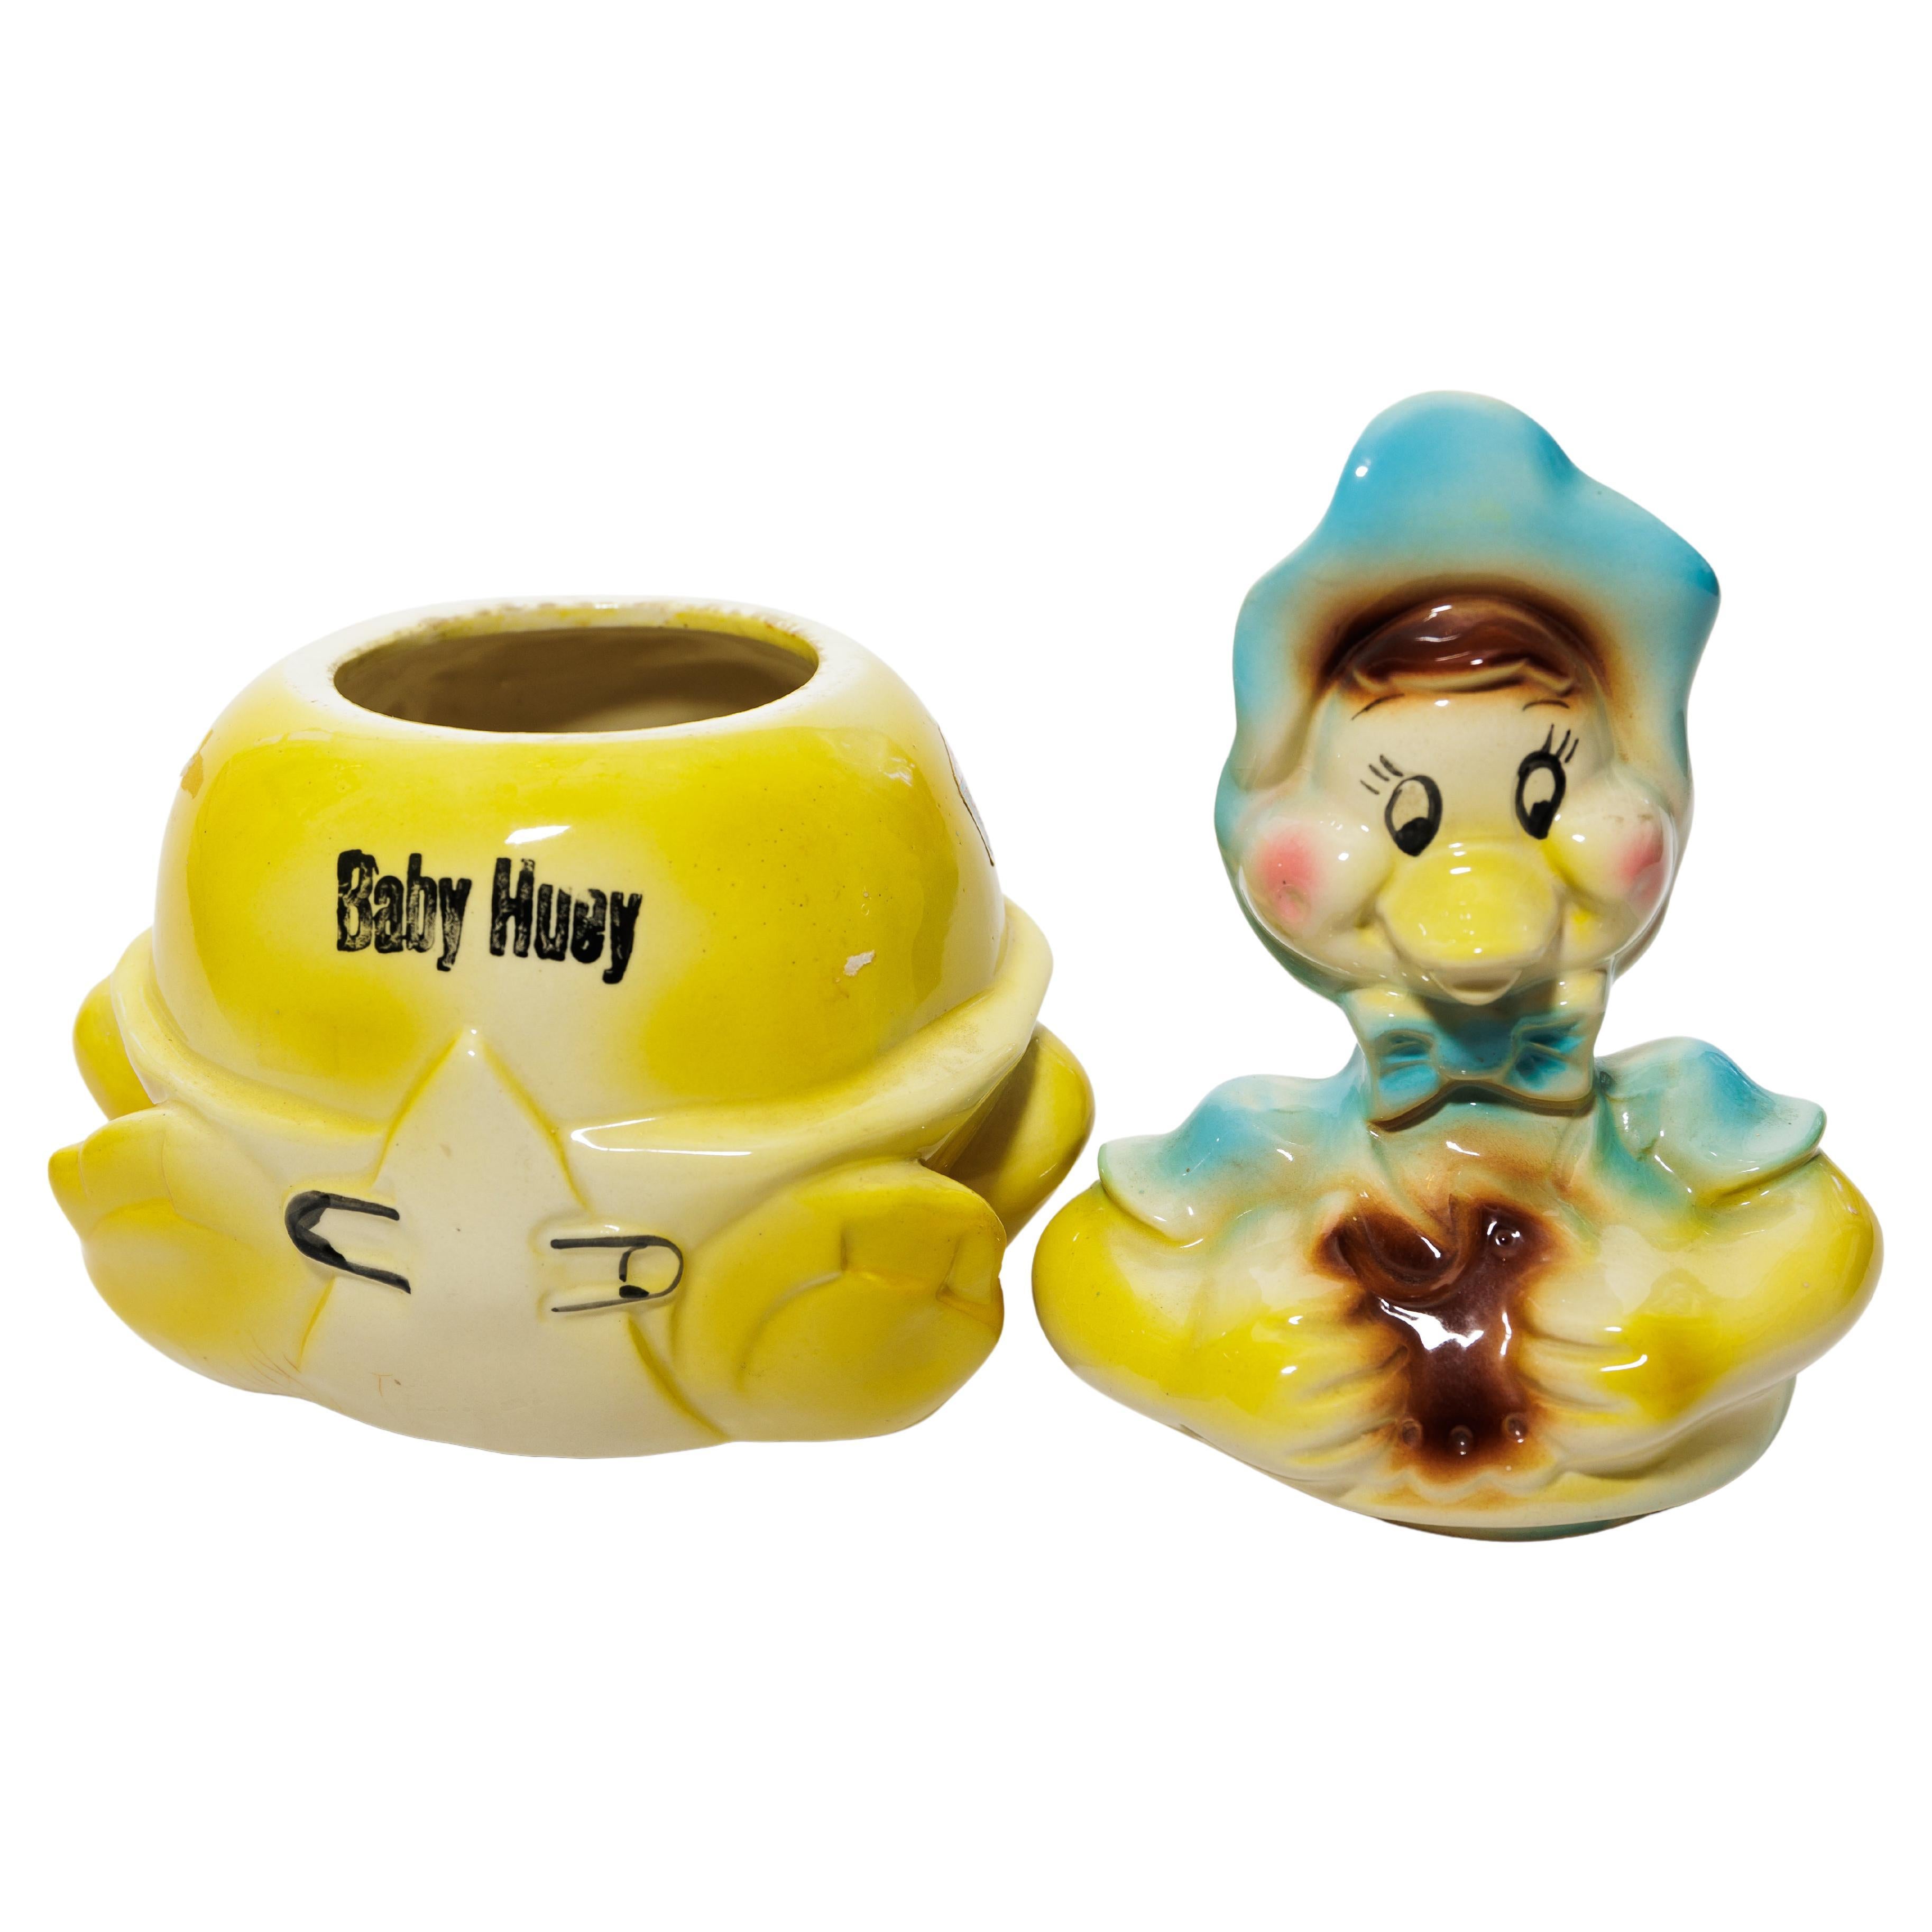 Baby Huey" Cookie-Gefäß im Angebot